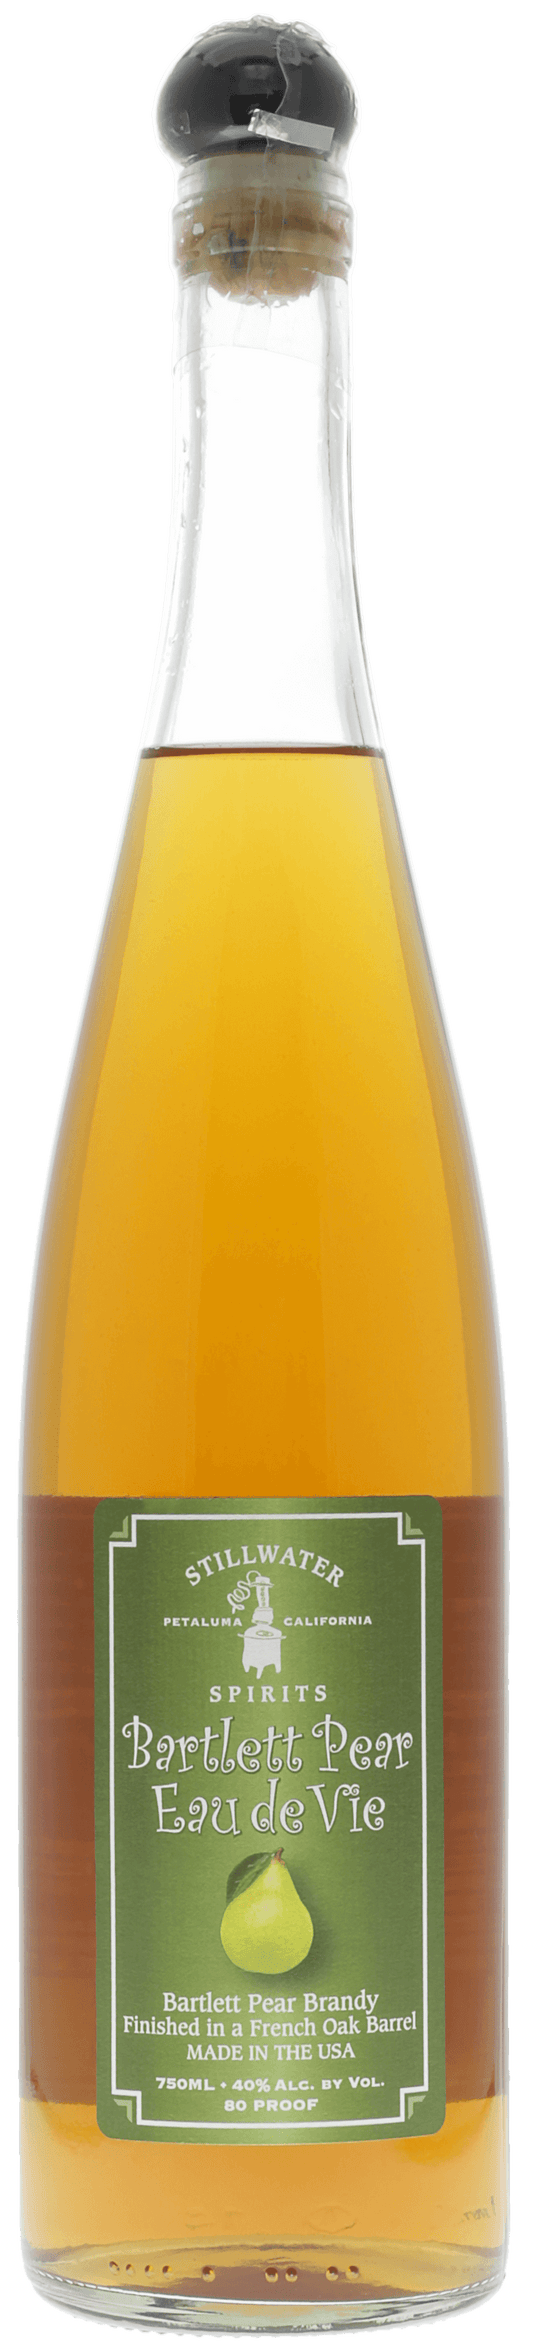 Eau distillée de Framboise BIOCOS - Rubus idaeus